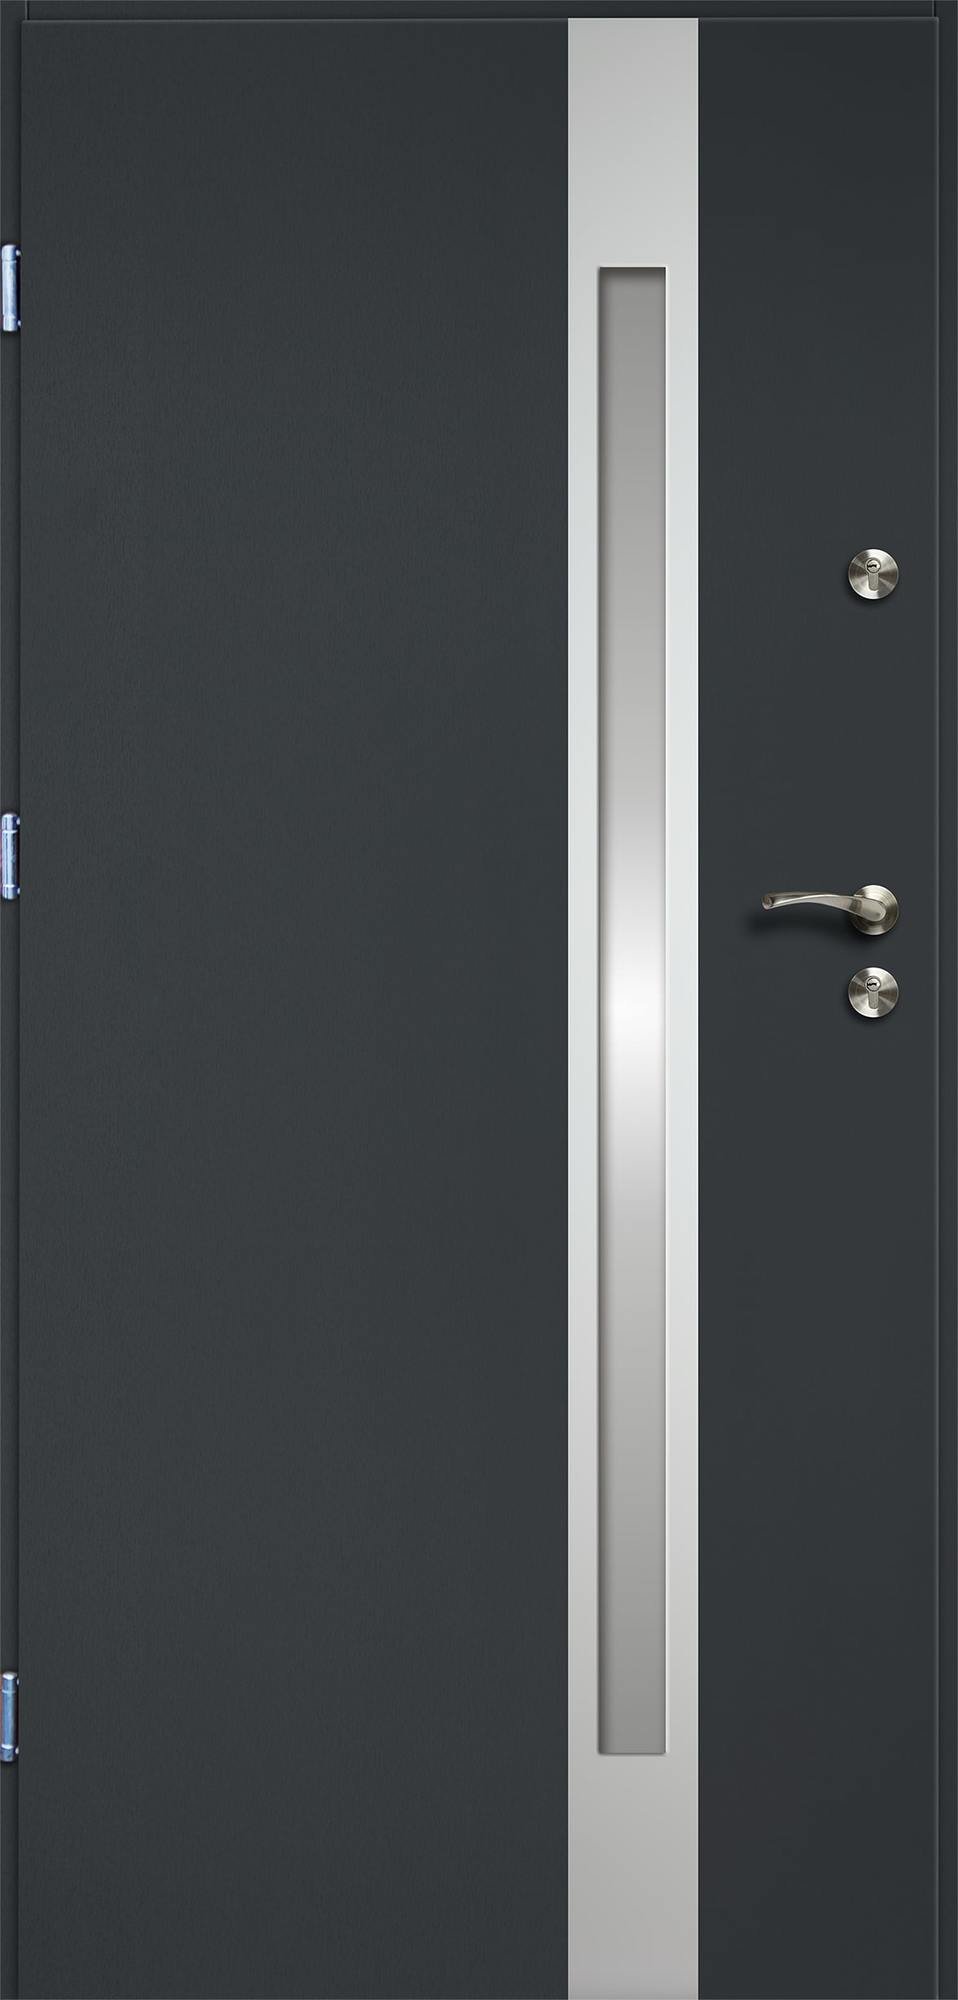 Lauko durys RADEX VERTE II, antracito sp., 895 x 2063 mm, kairė